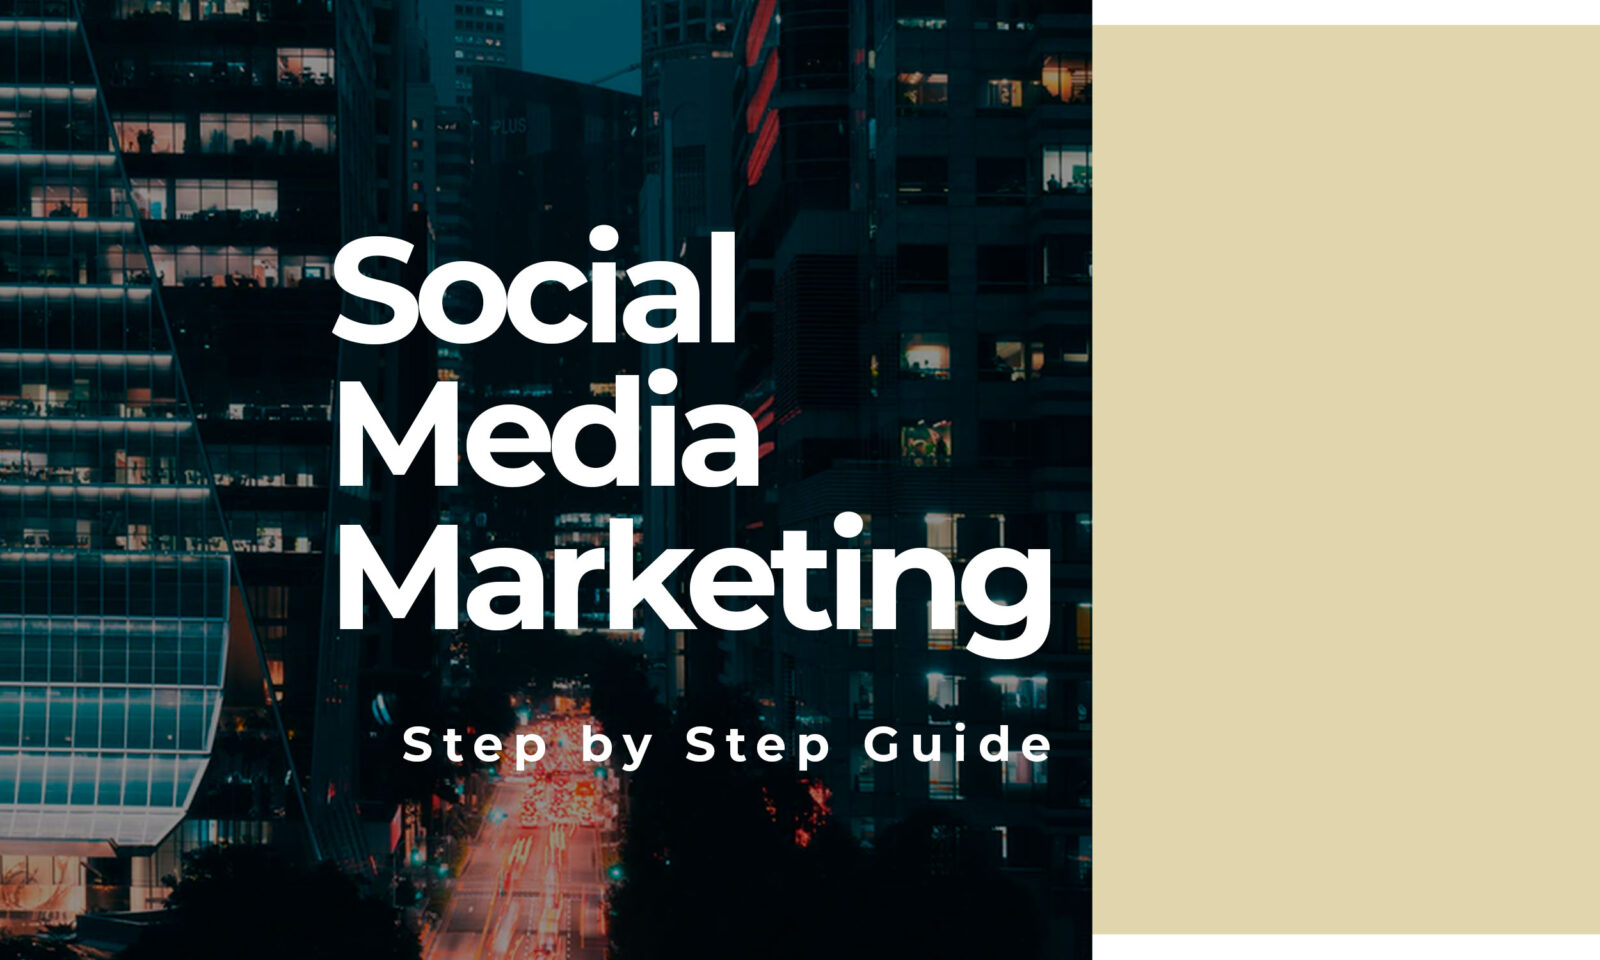 Social Media Marketing - Step by Step Guide